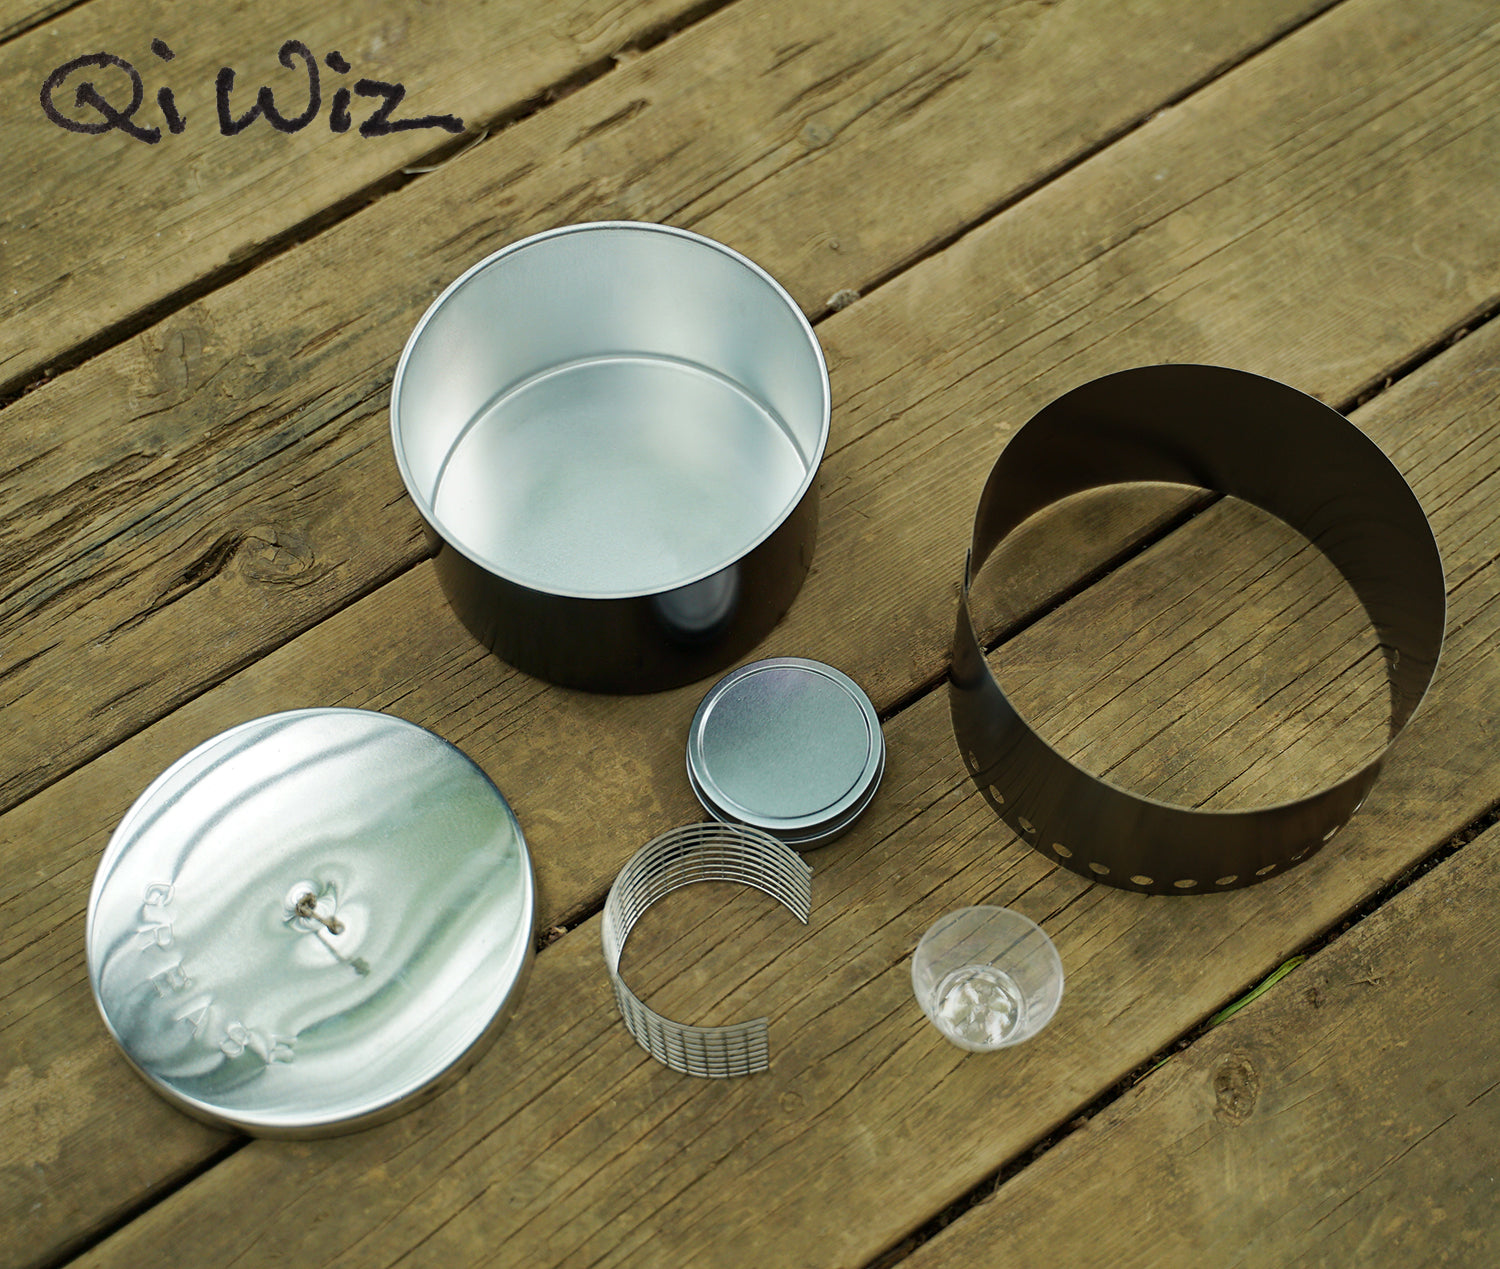 Qiwiz / Alpot Complete Kit